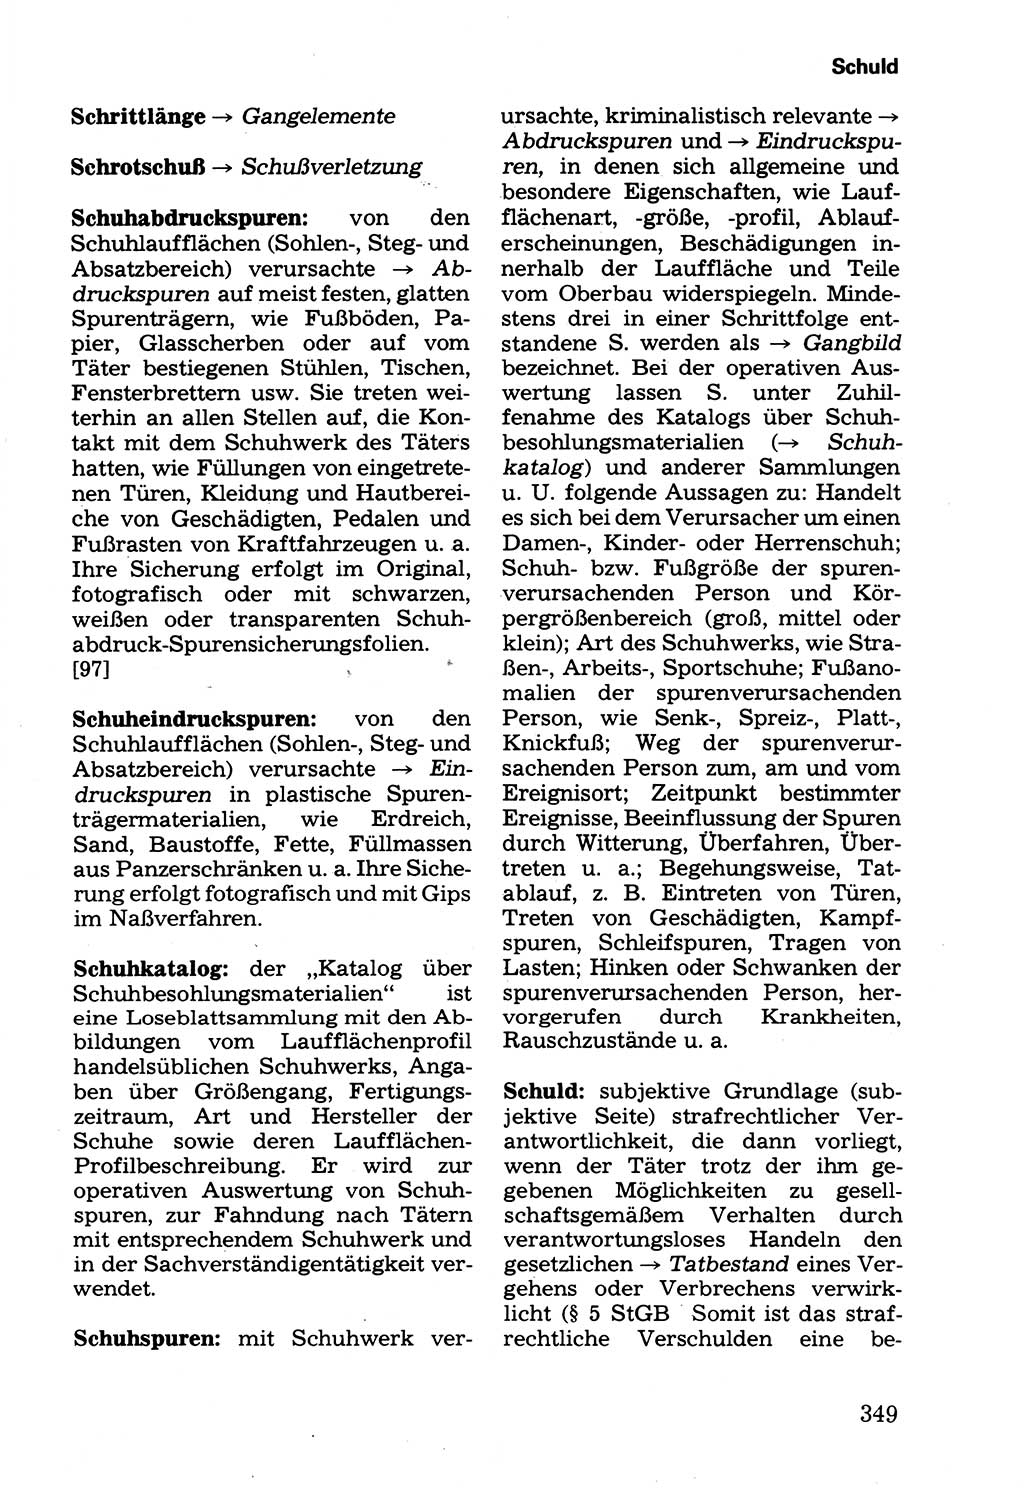 Wörterbuch der sozialistischen Kriminalistik [Deutsche Demokratische Republik (DDR)] 1981, Seite 349 (Wb. soz. Krim. DDR 1981, S. 349)